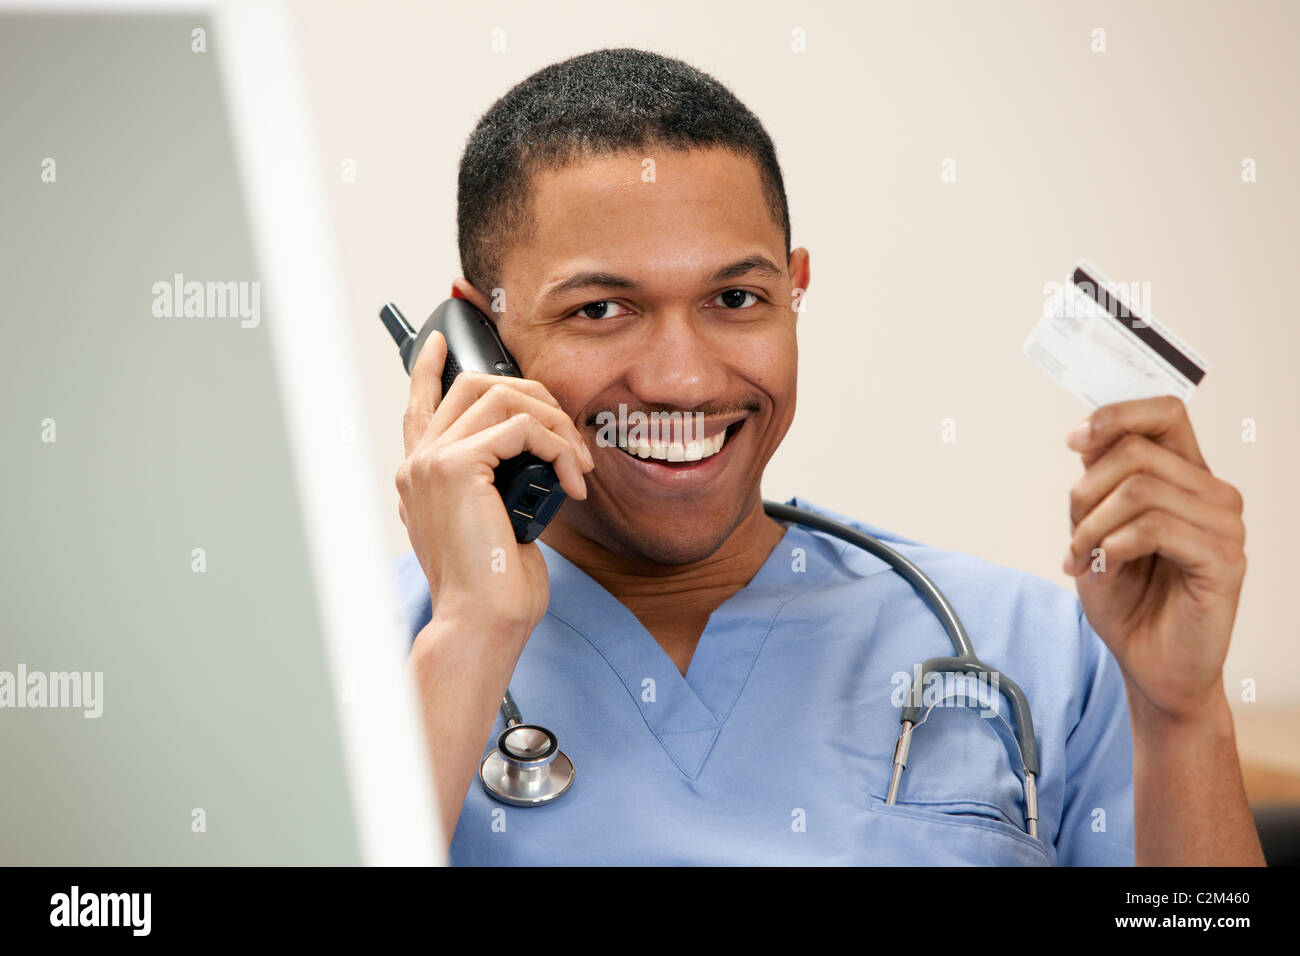 Doctor americano africano en el teléfono sentado en el equipo con su tarjeta de crédito Foto de stock